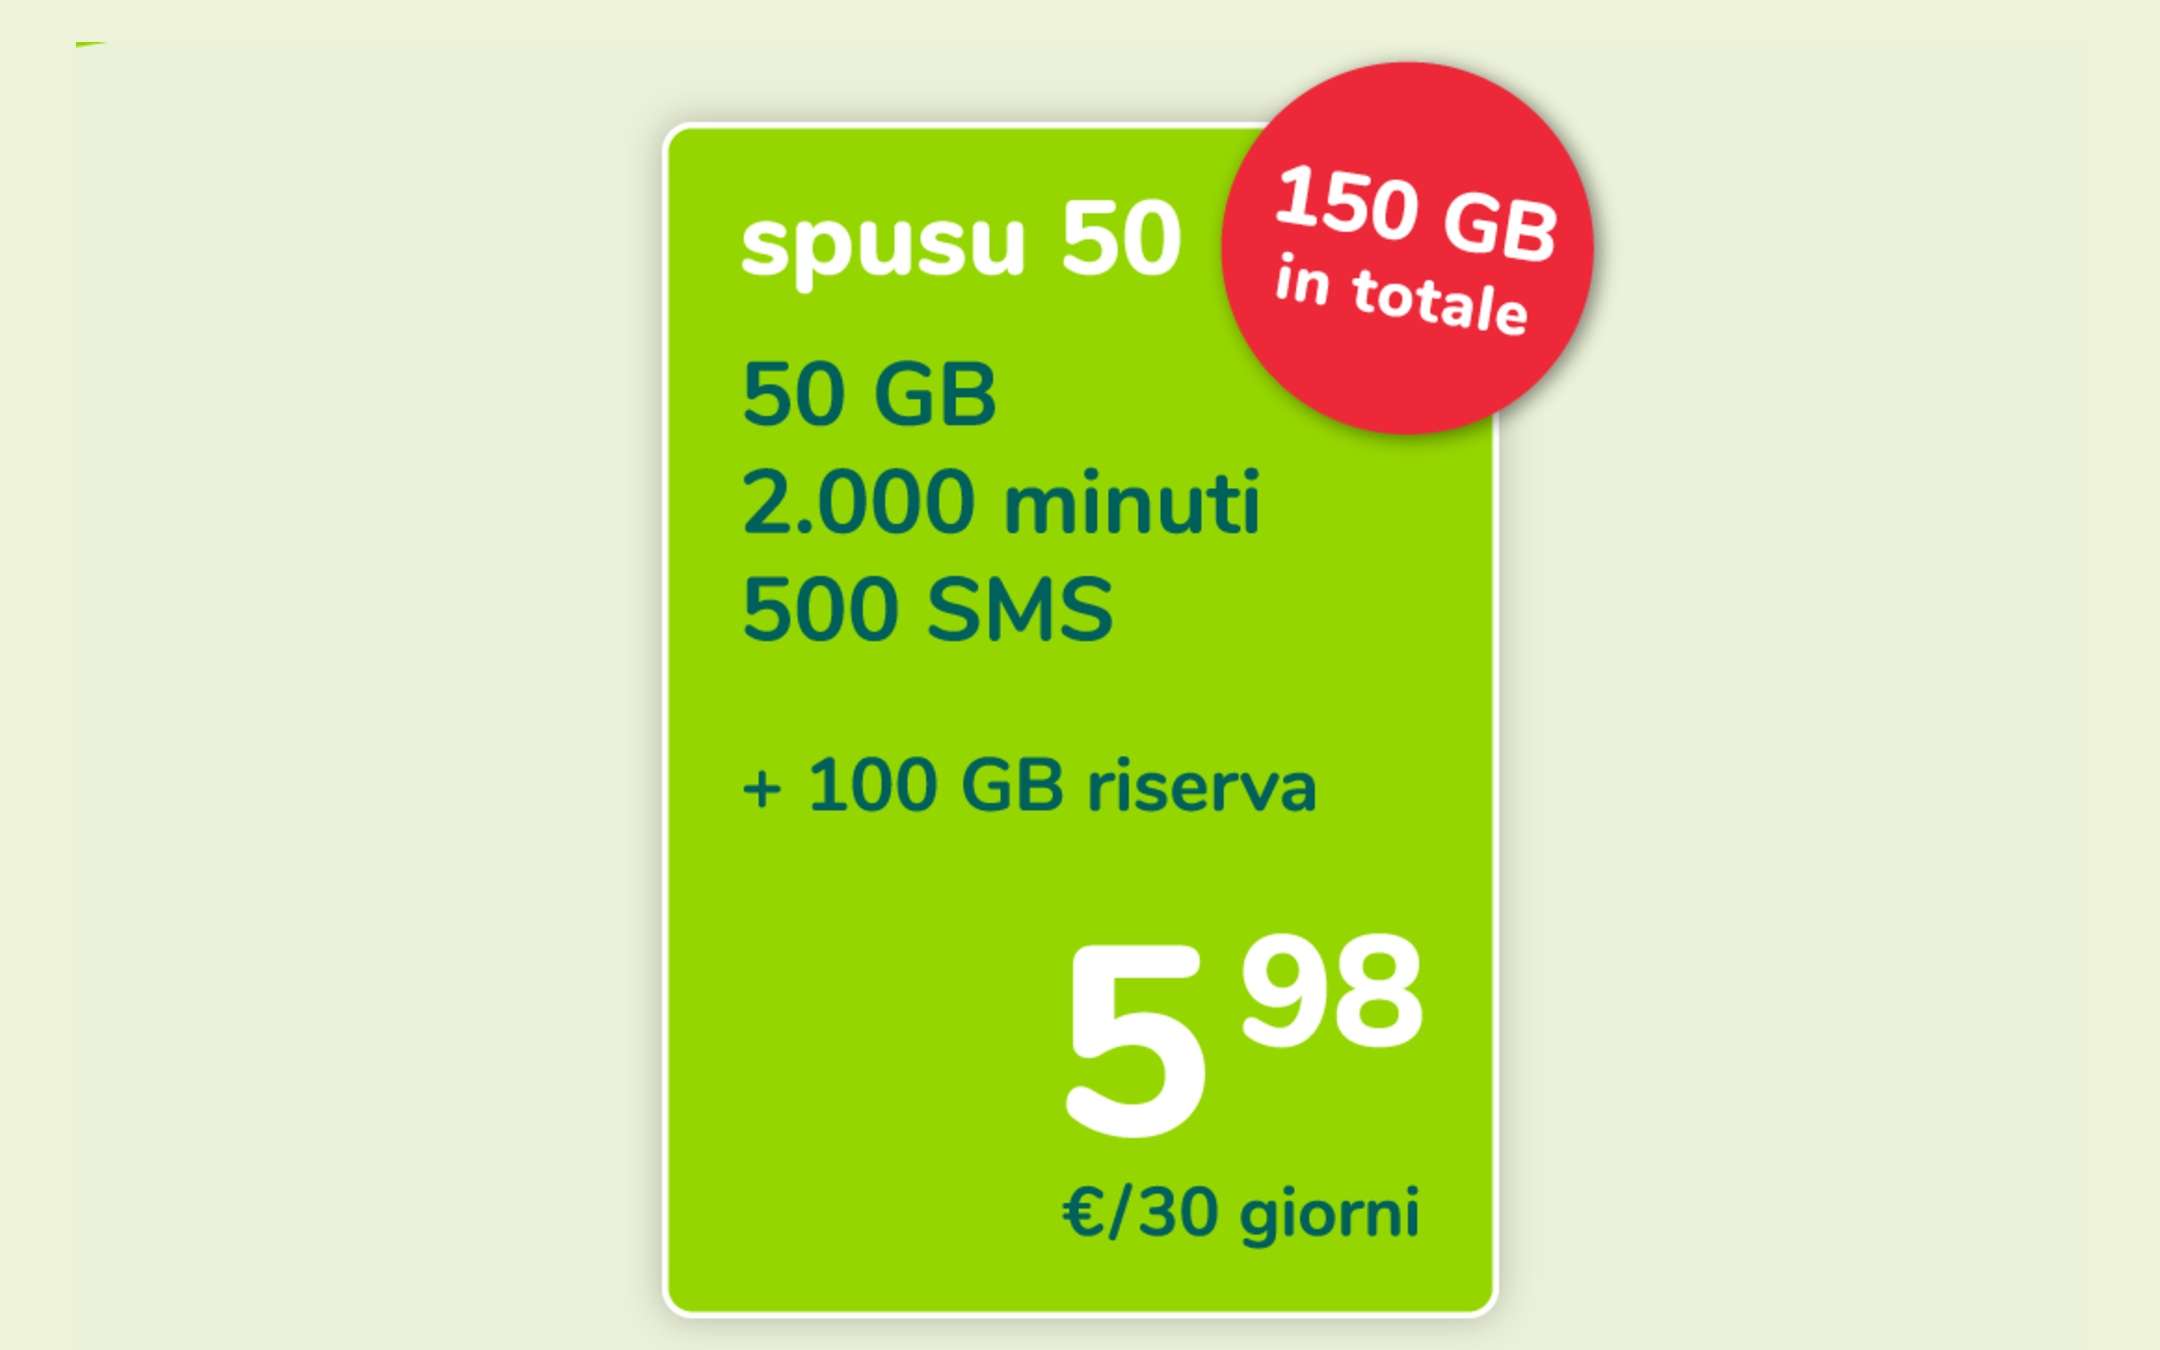 Promo Spusu50: 150GB a 5,98€ fino al 31 Luglio!